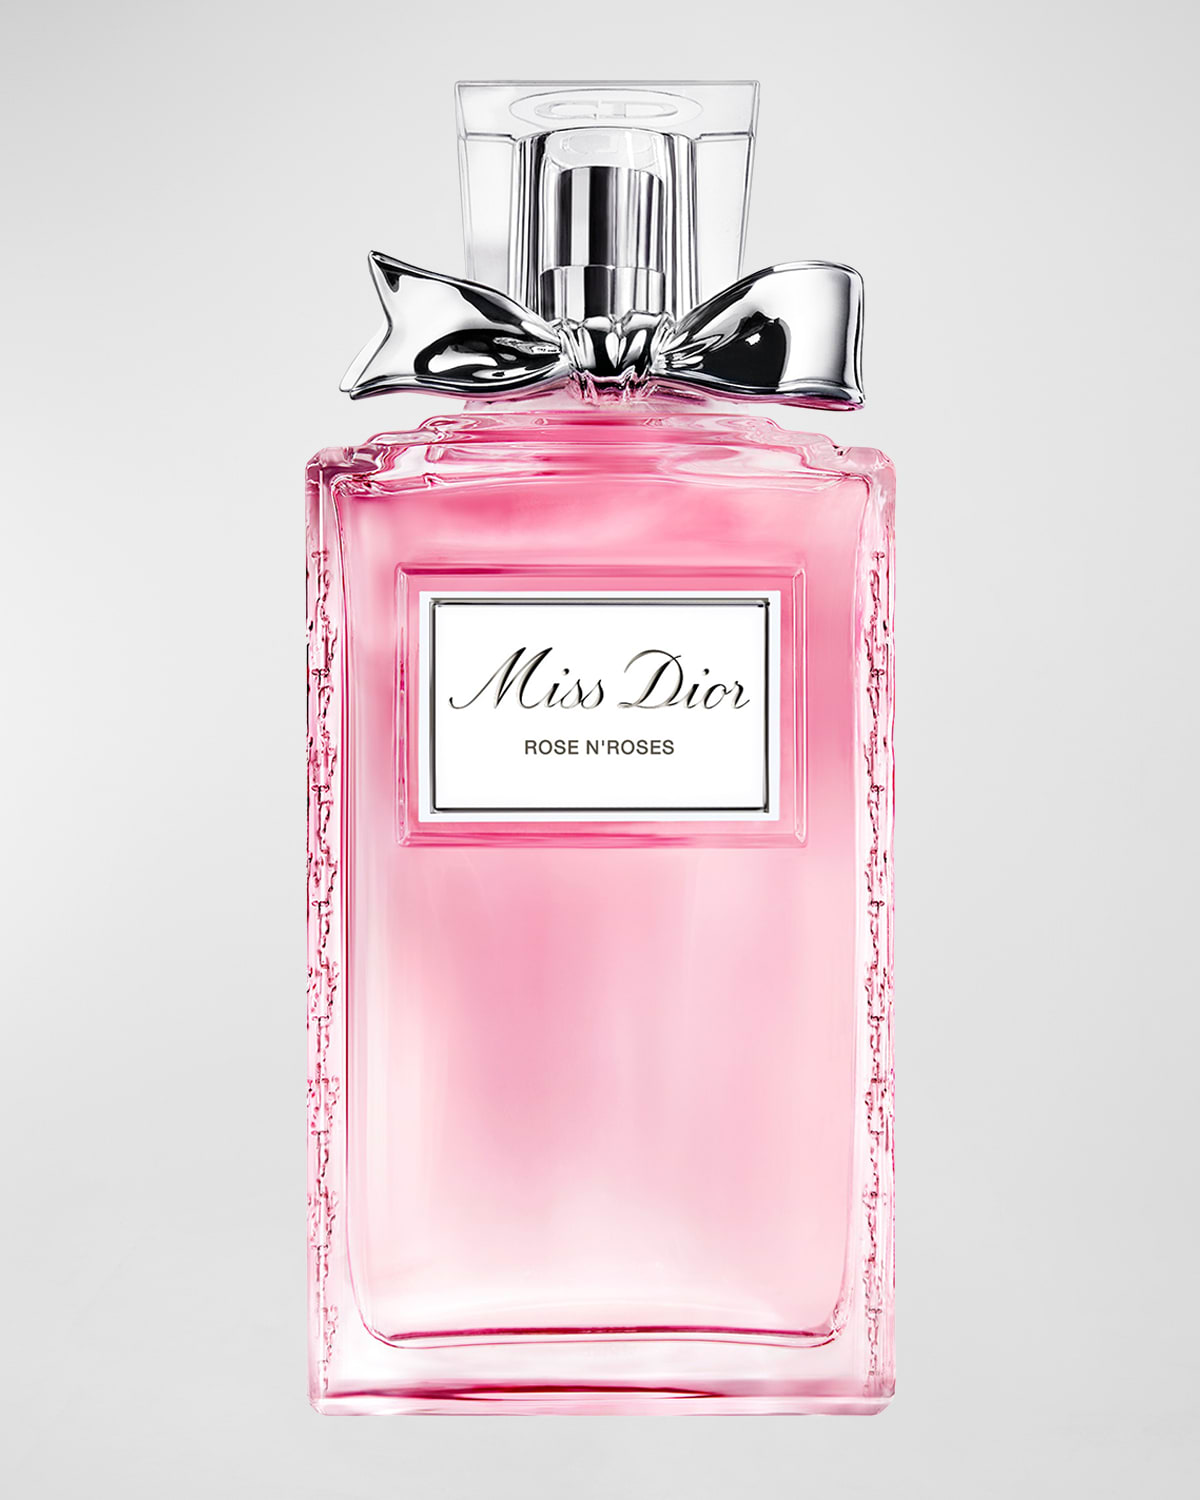 Miss Dior Rose N'Roses Eau de Toilette, 3.4 oz